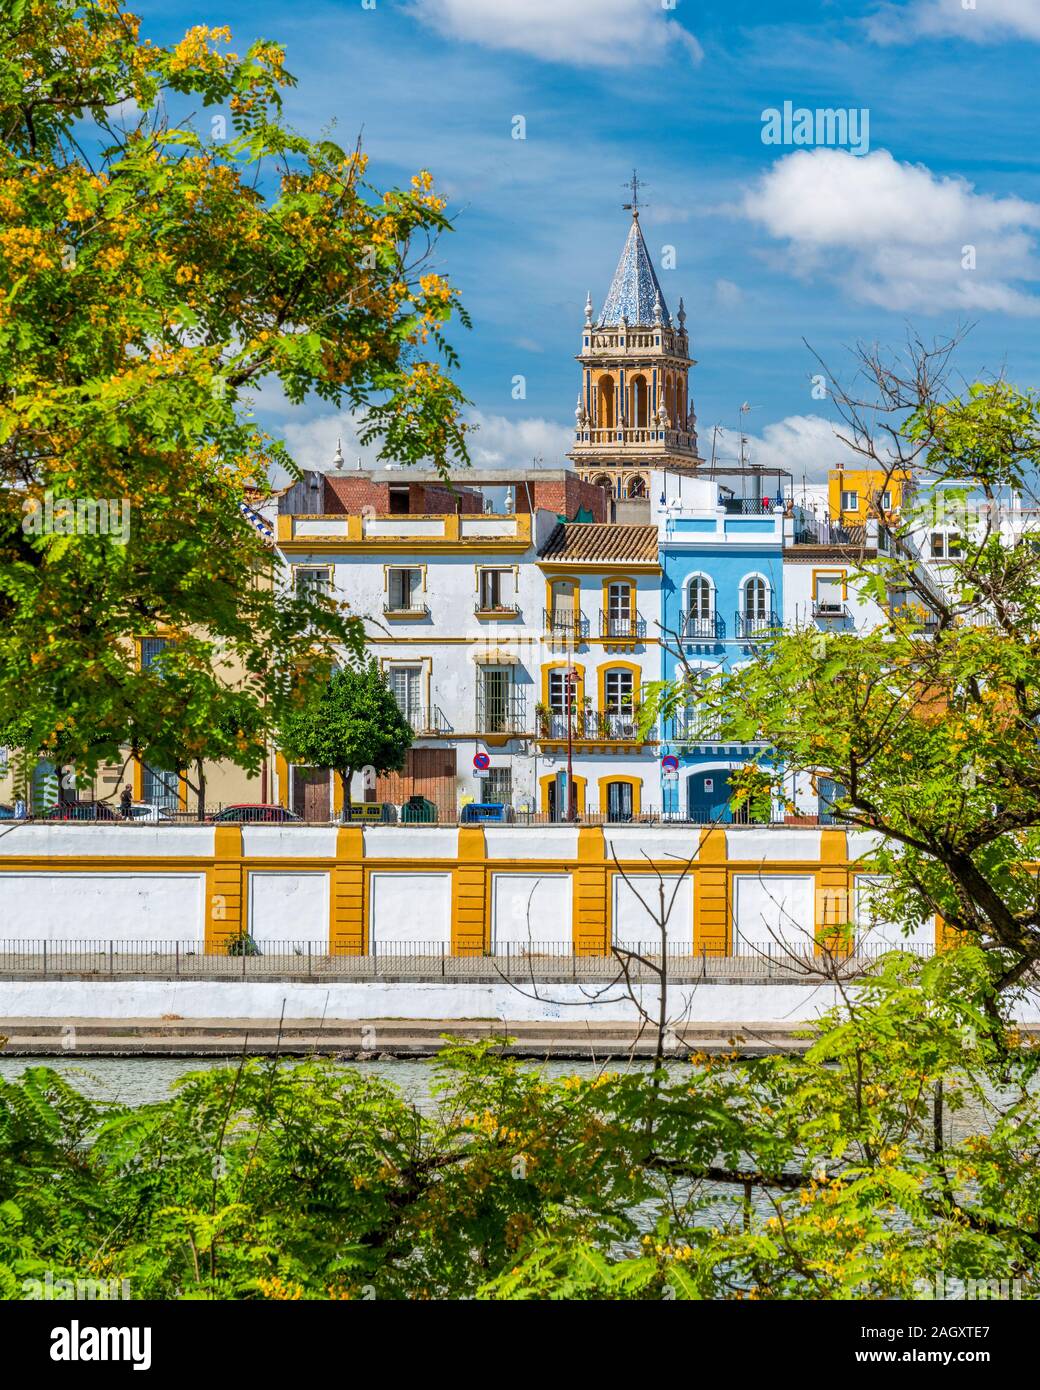 Vista colorida junto al río Guadalquivir en Sevilla, con la torre del campanario de la Real Parroquia de Señora Santa Ana. Andalucía, España. Foto de stock